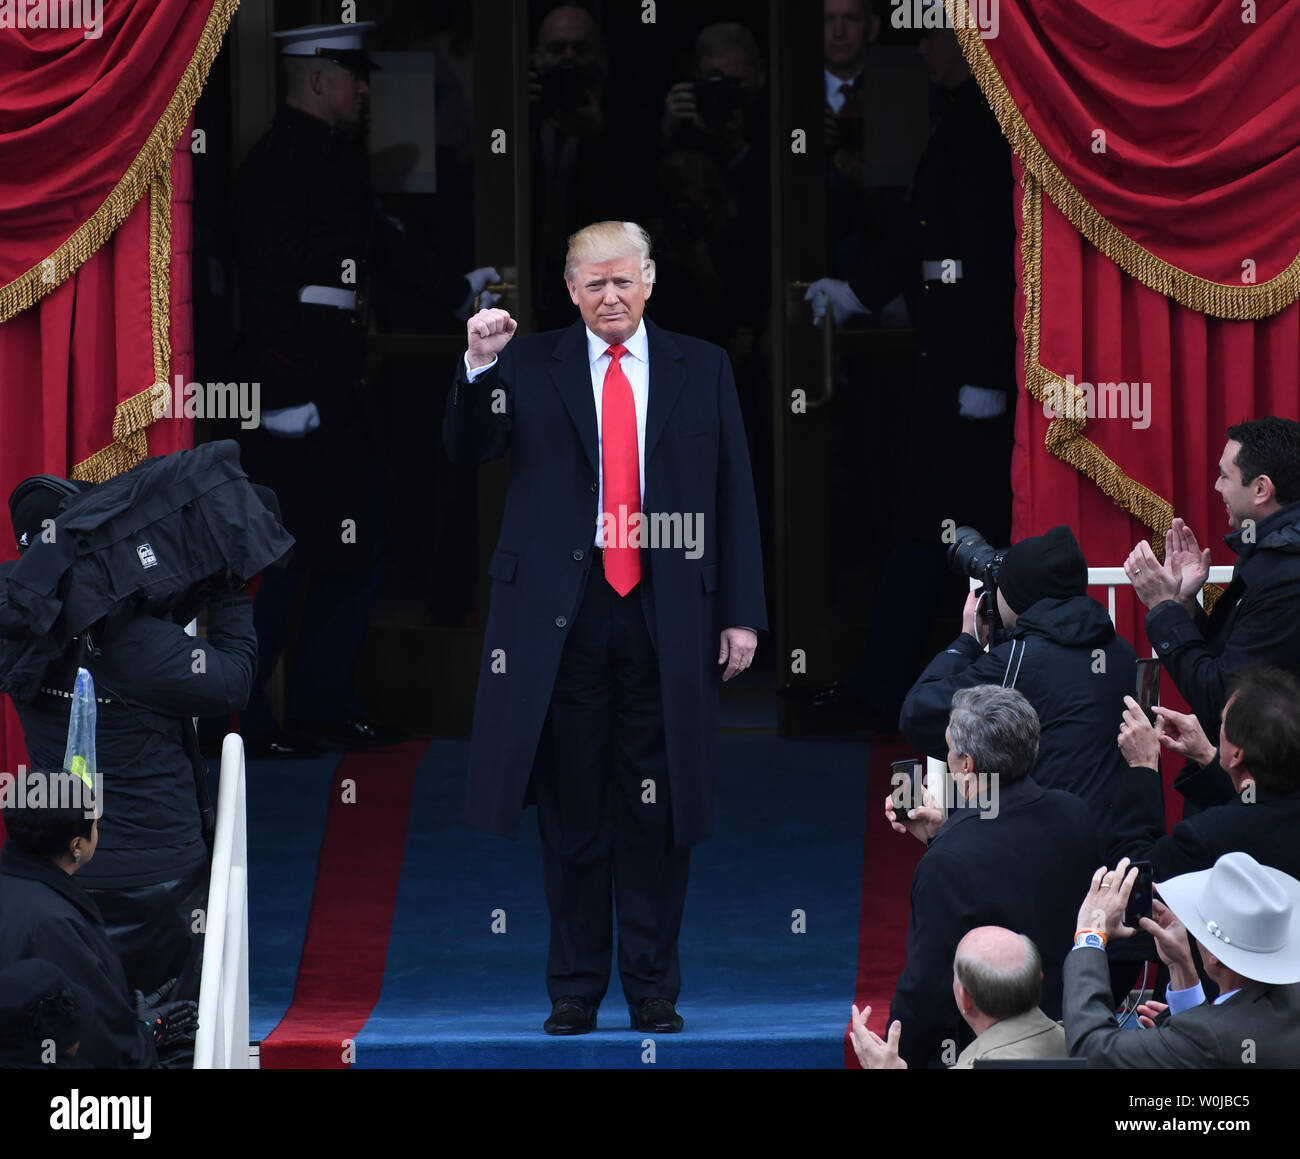 Le président élu, M. Donald J. Trump arrive pour son investiture le 20 janvier 2017 à Washington, D.C. Trump devient le 45e président des États-Unis. Photo de Pat Benic/UPI Banque D'Images